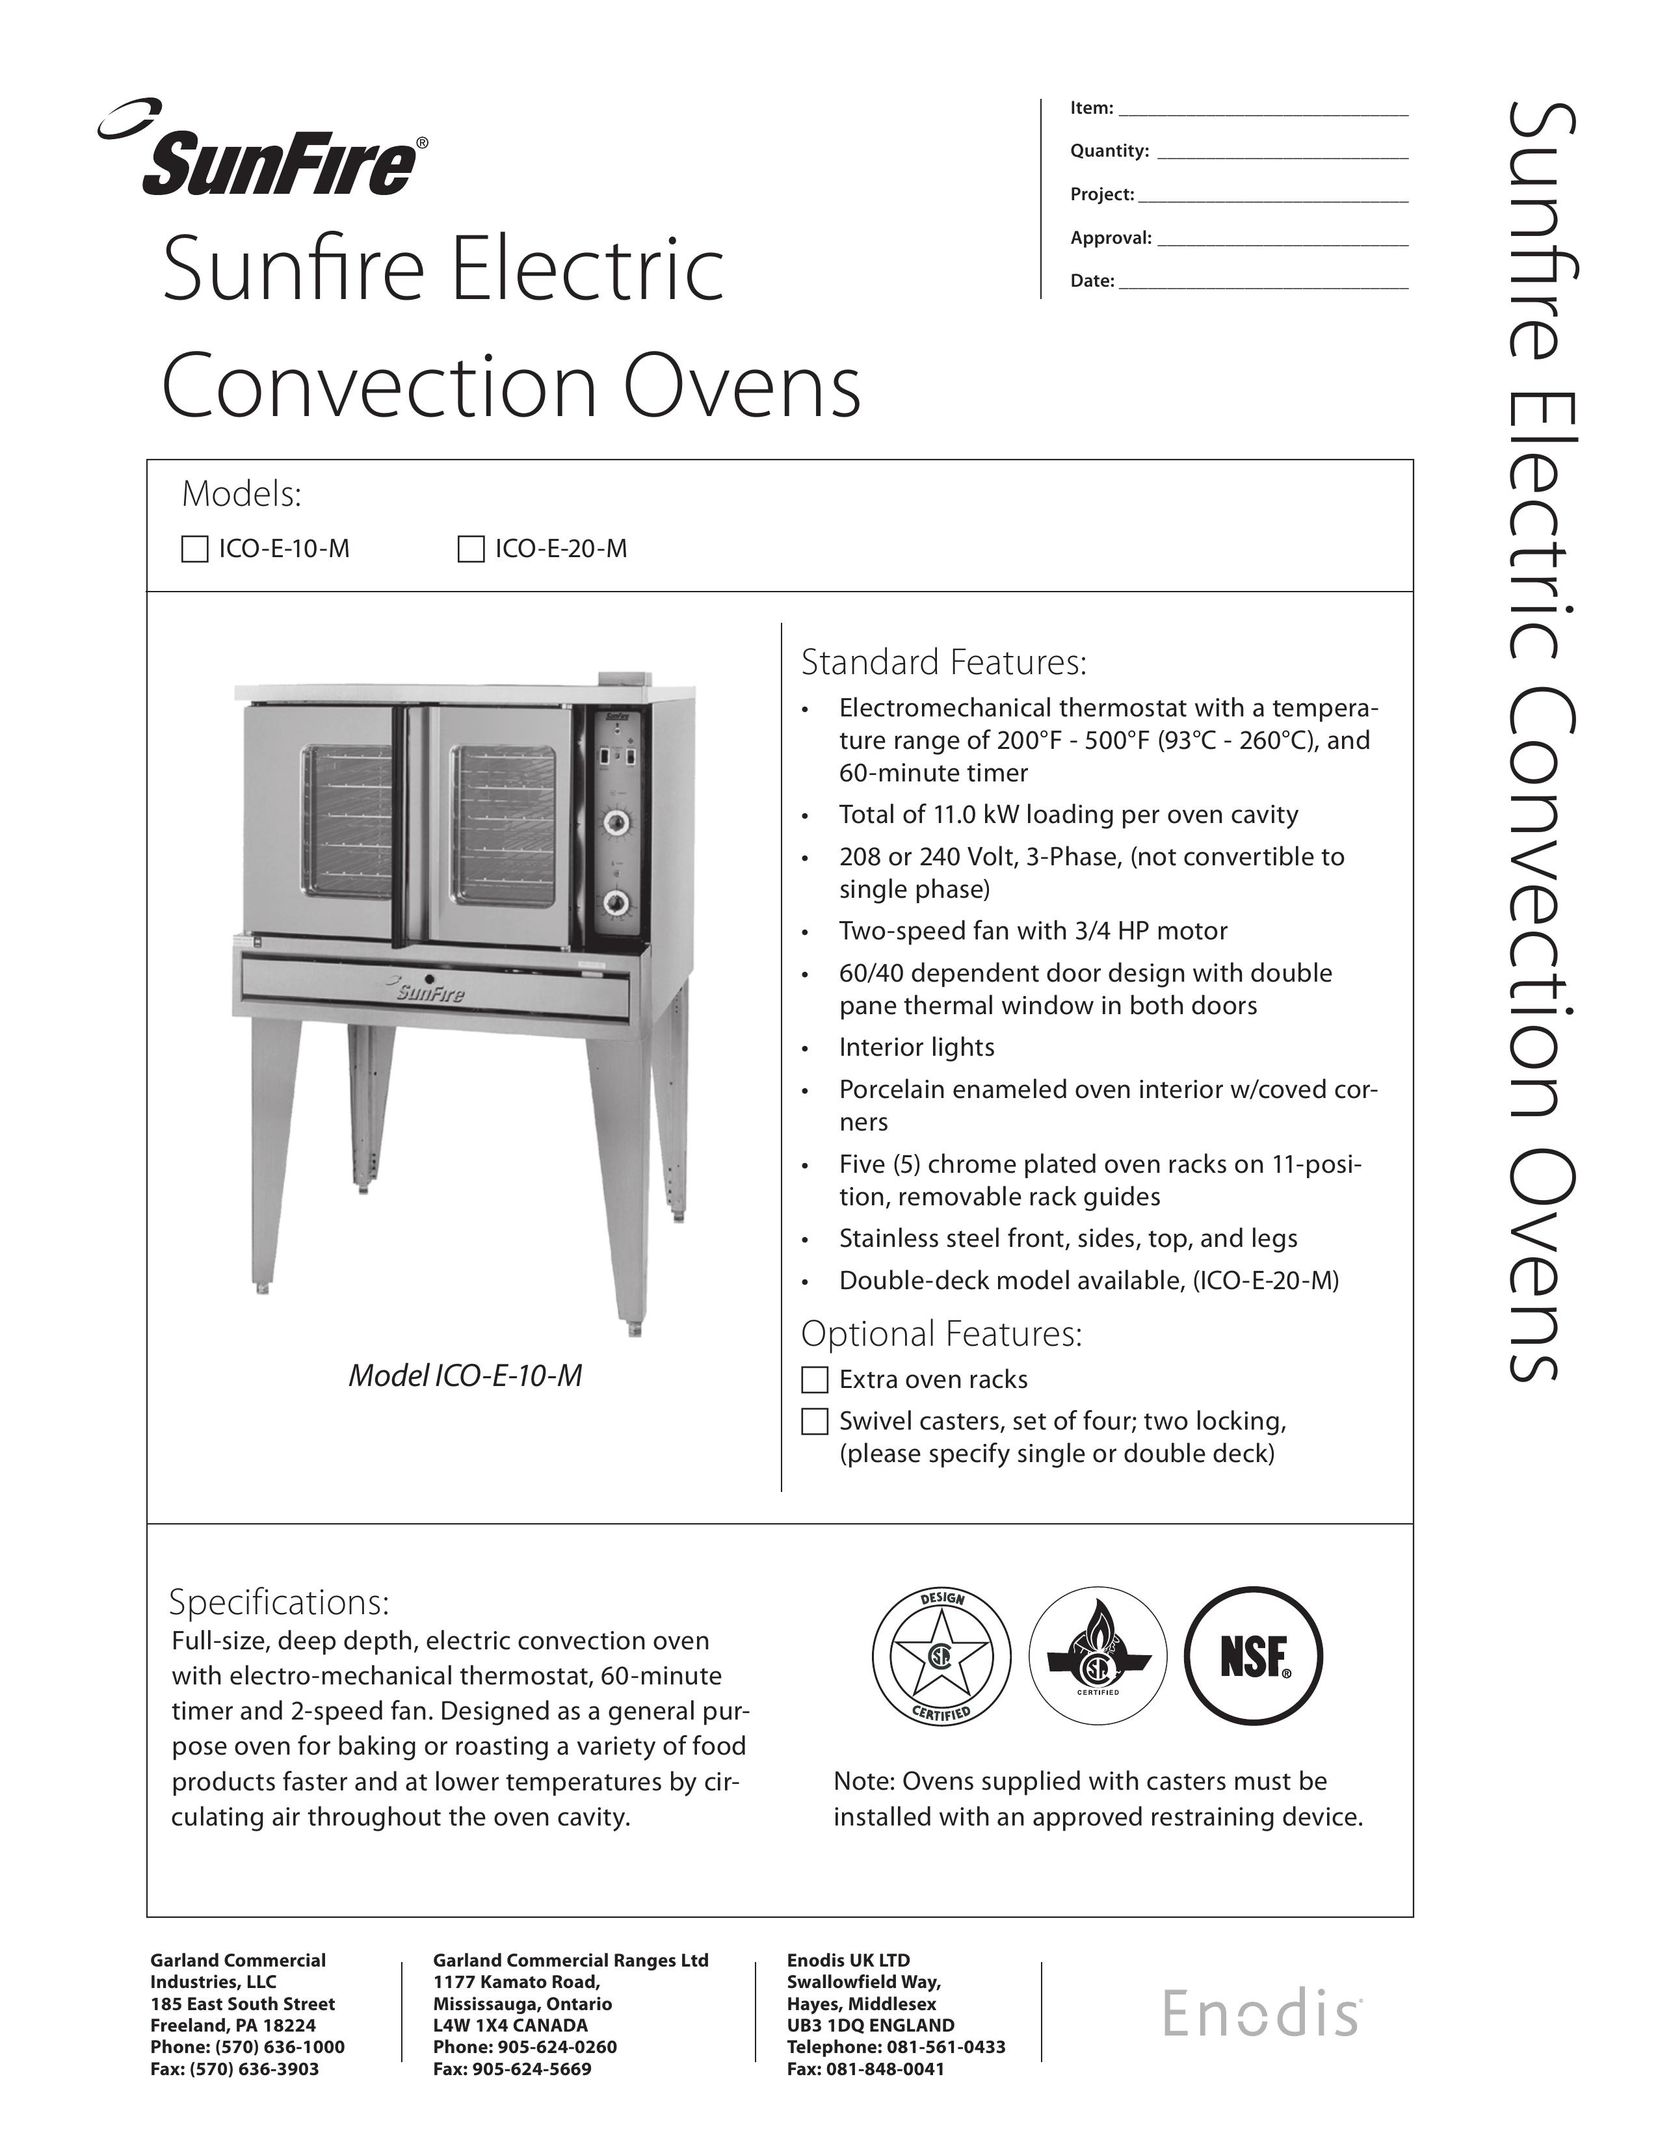 Sunfire ICO-E-20-M Convection Oven User Manual